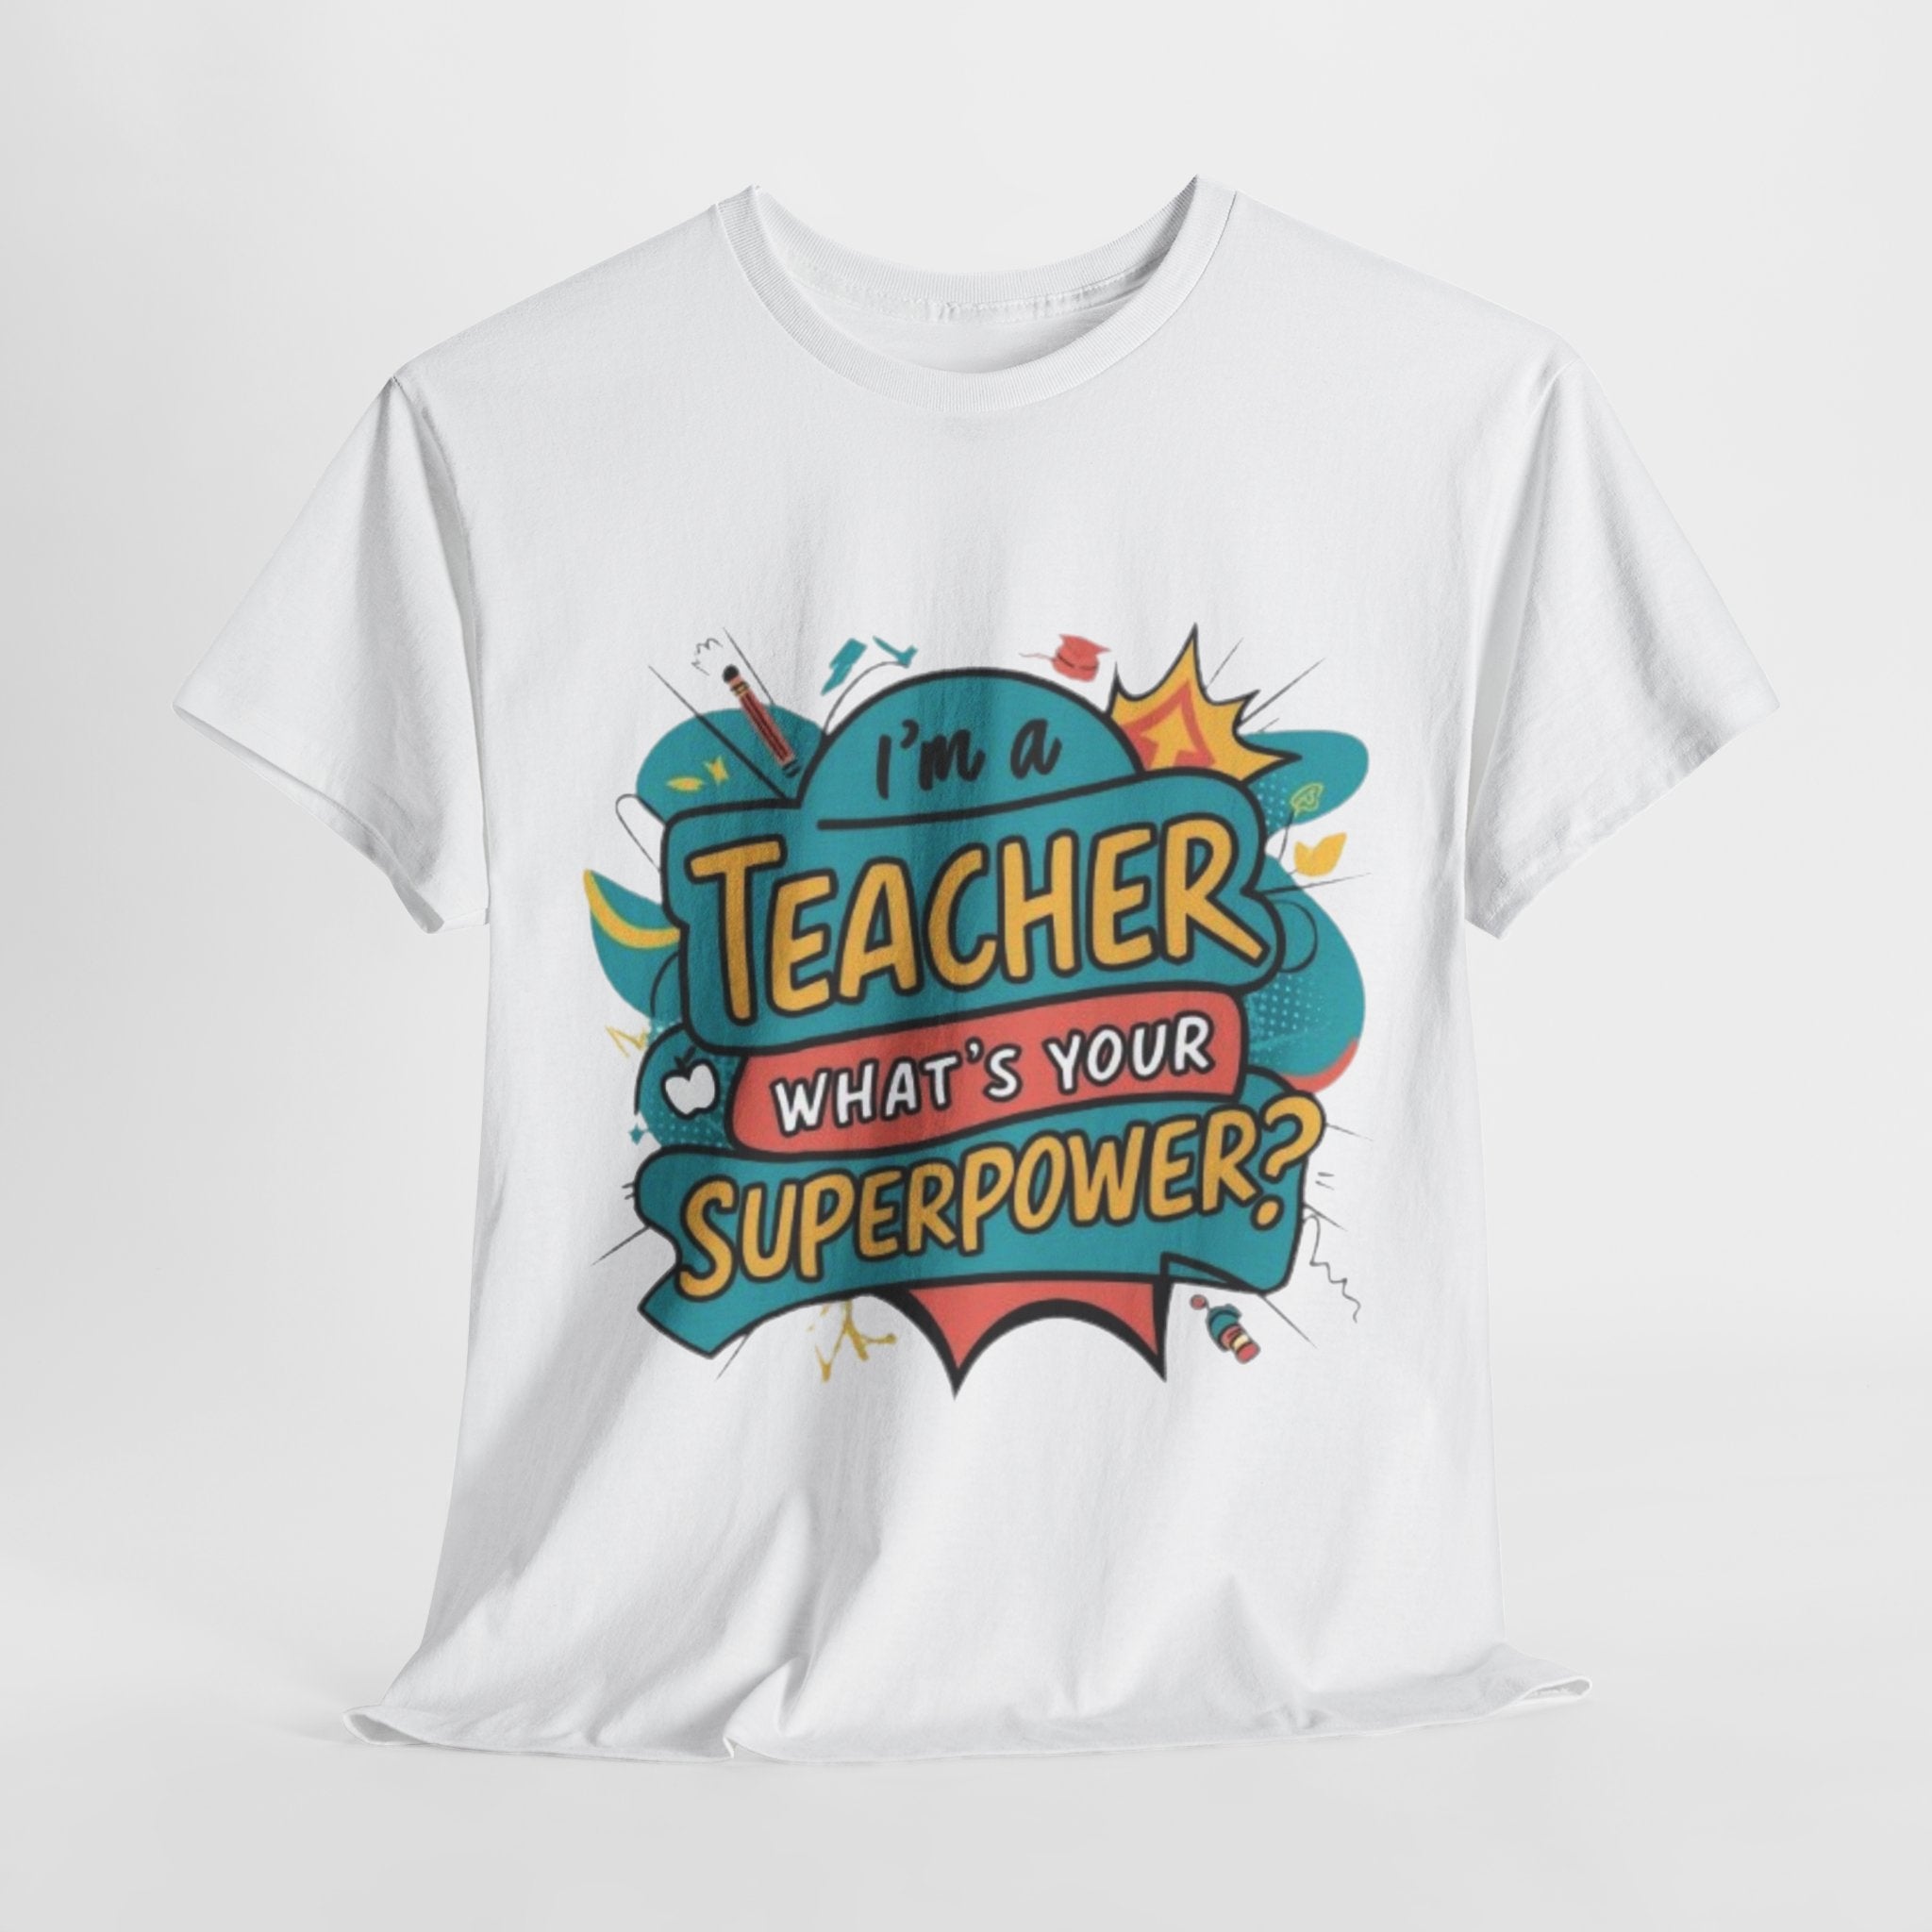 Superpower Teacher” T-Shirt